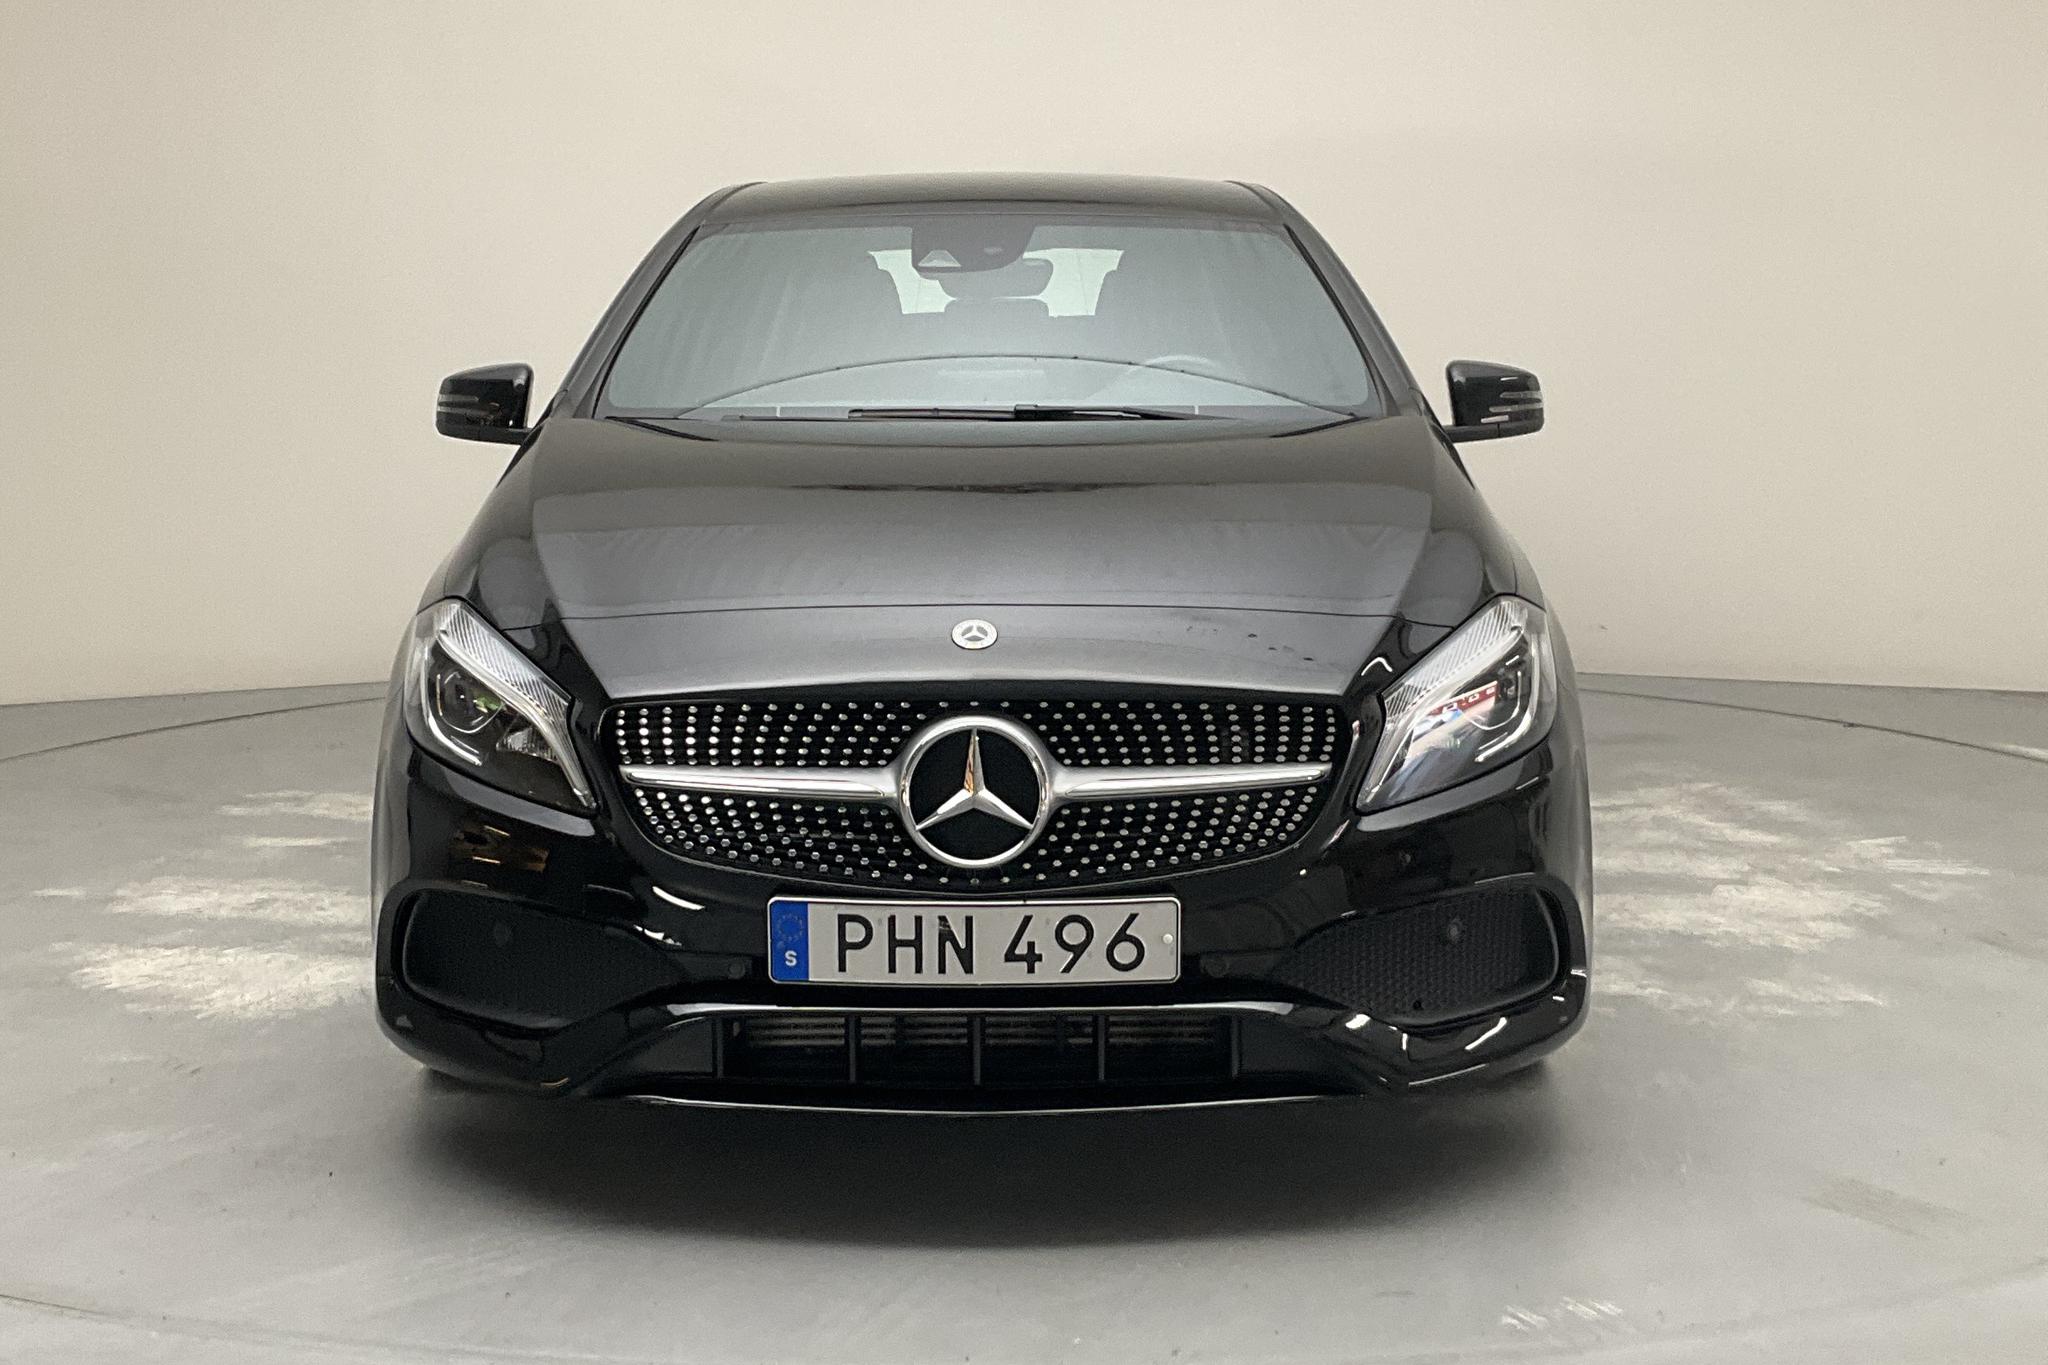 Mercedes A 180 5dr W176 (122hk) - 73 150 km - Manual - black - 2018